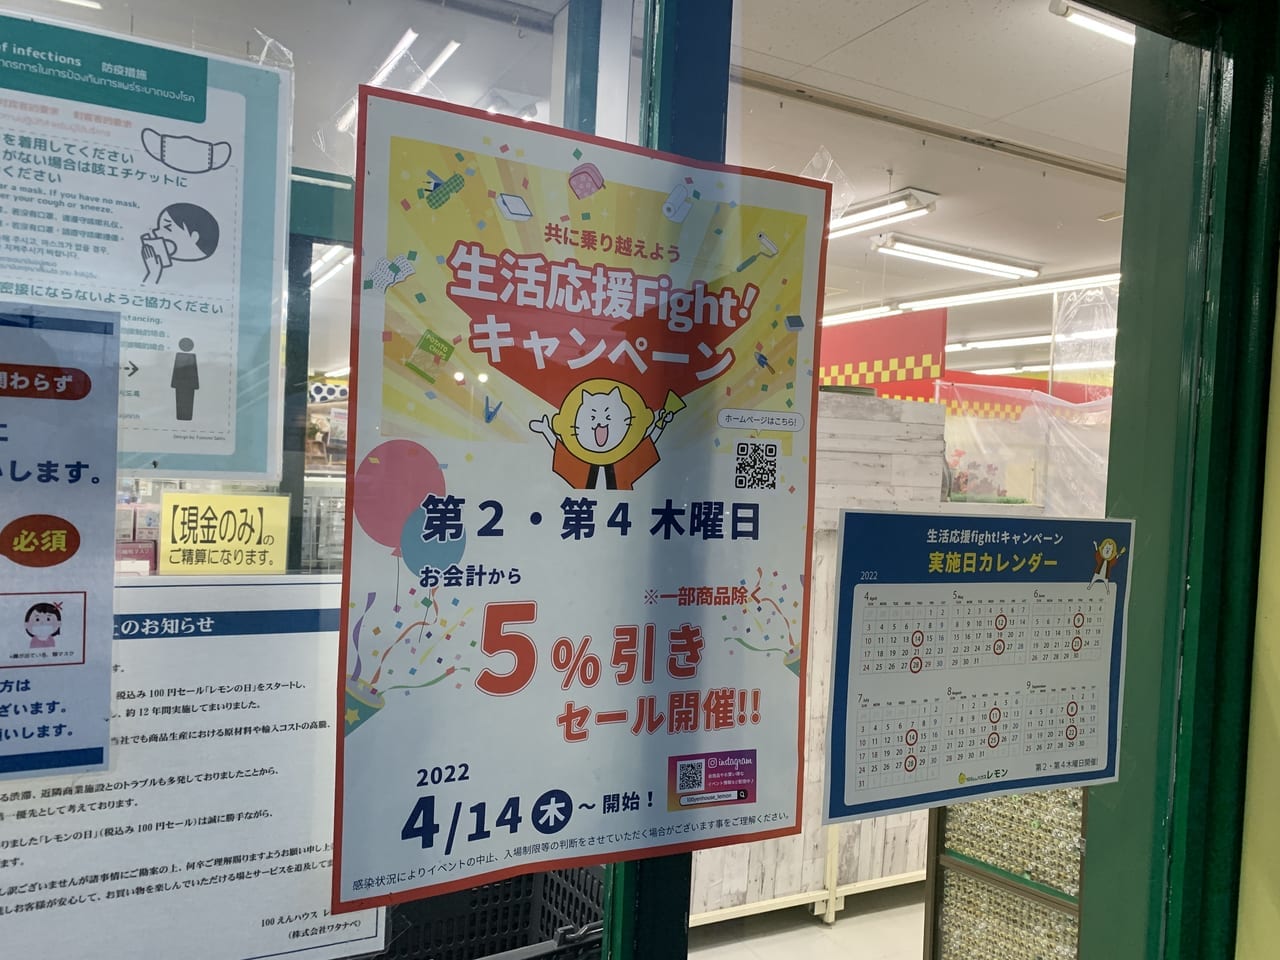 100えんハウスレモン町田店の生活応援fightキャンペーンチラシ